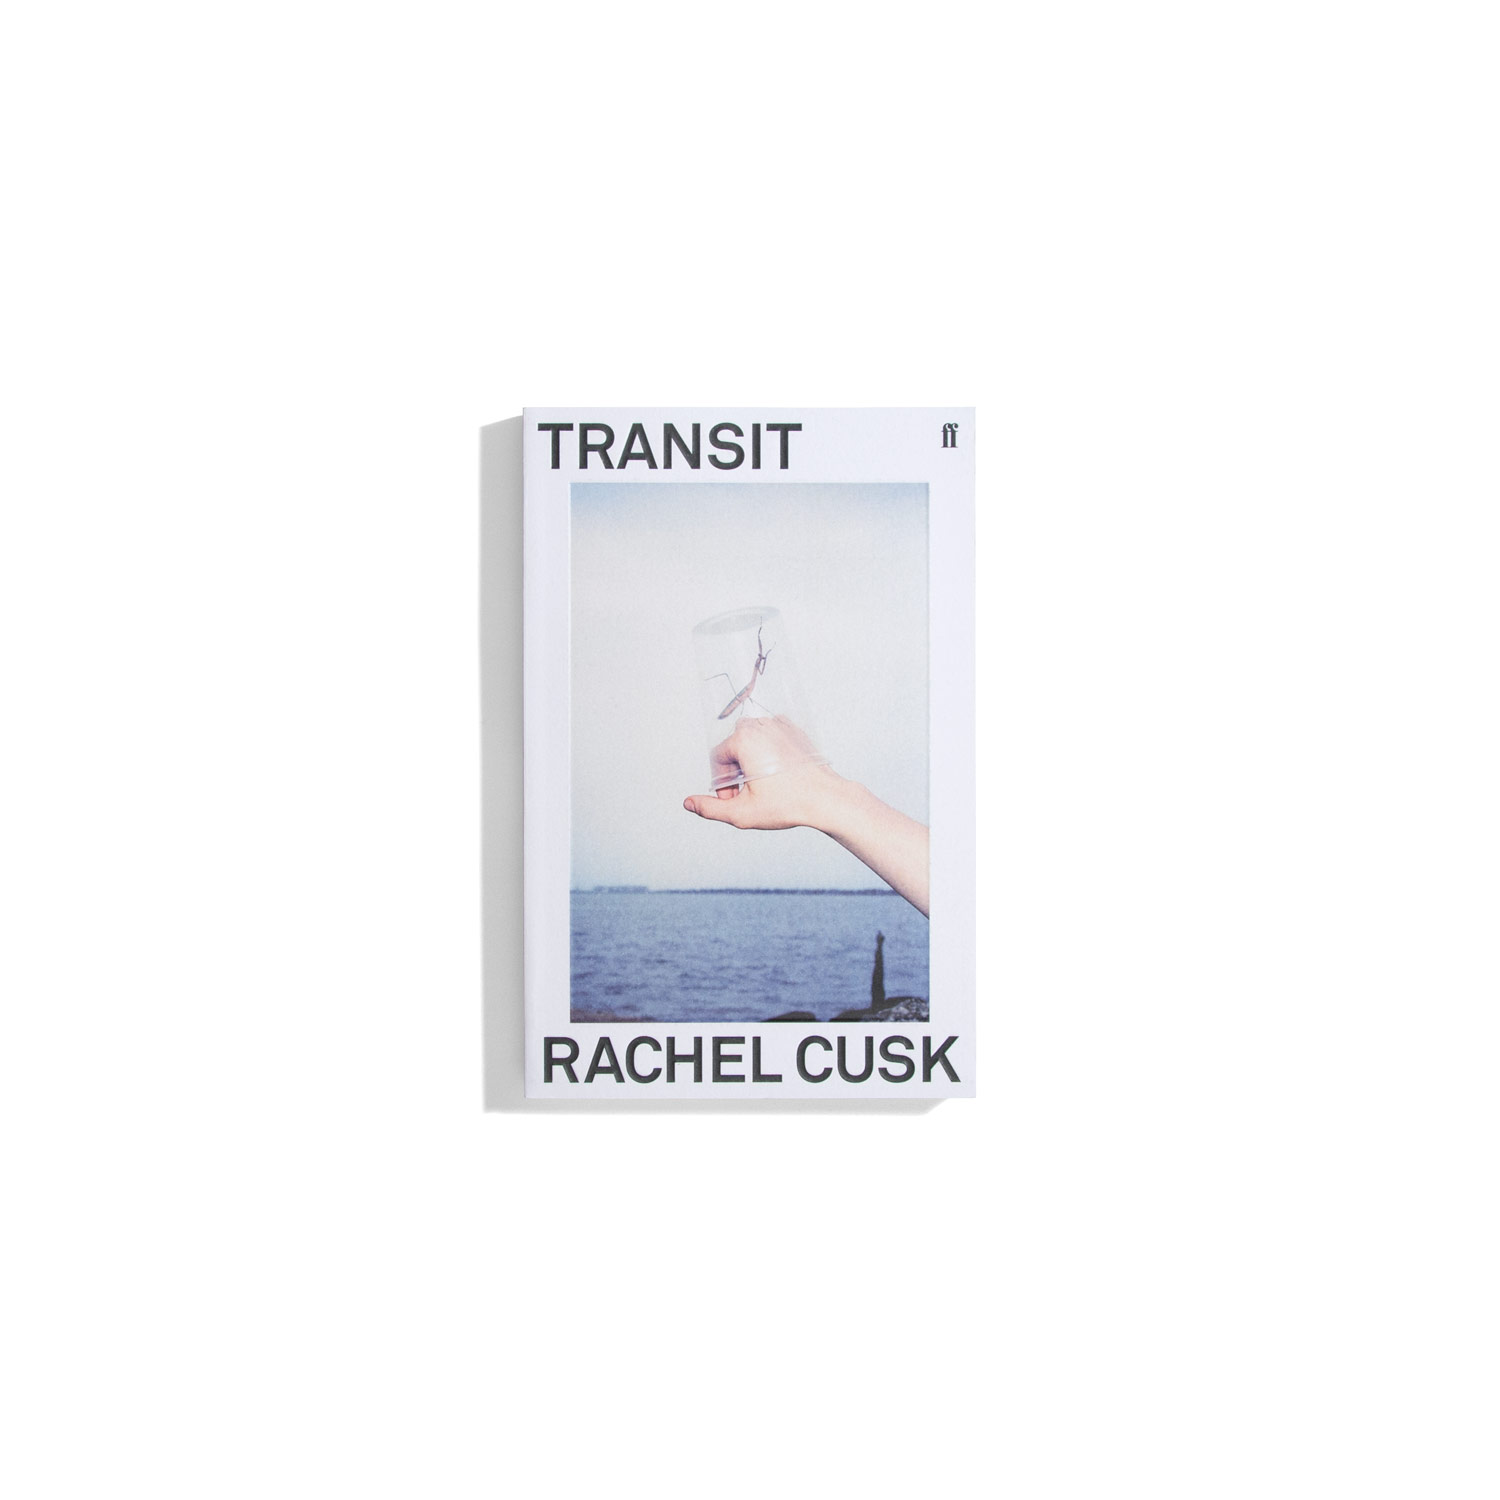 Transit - Rachel Cusk